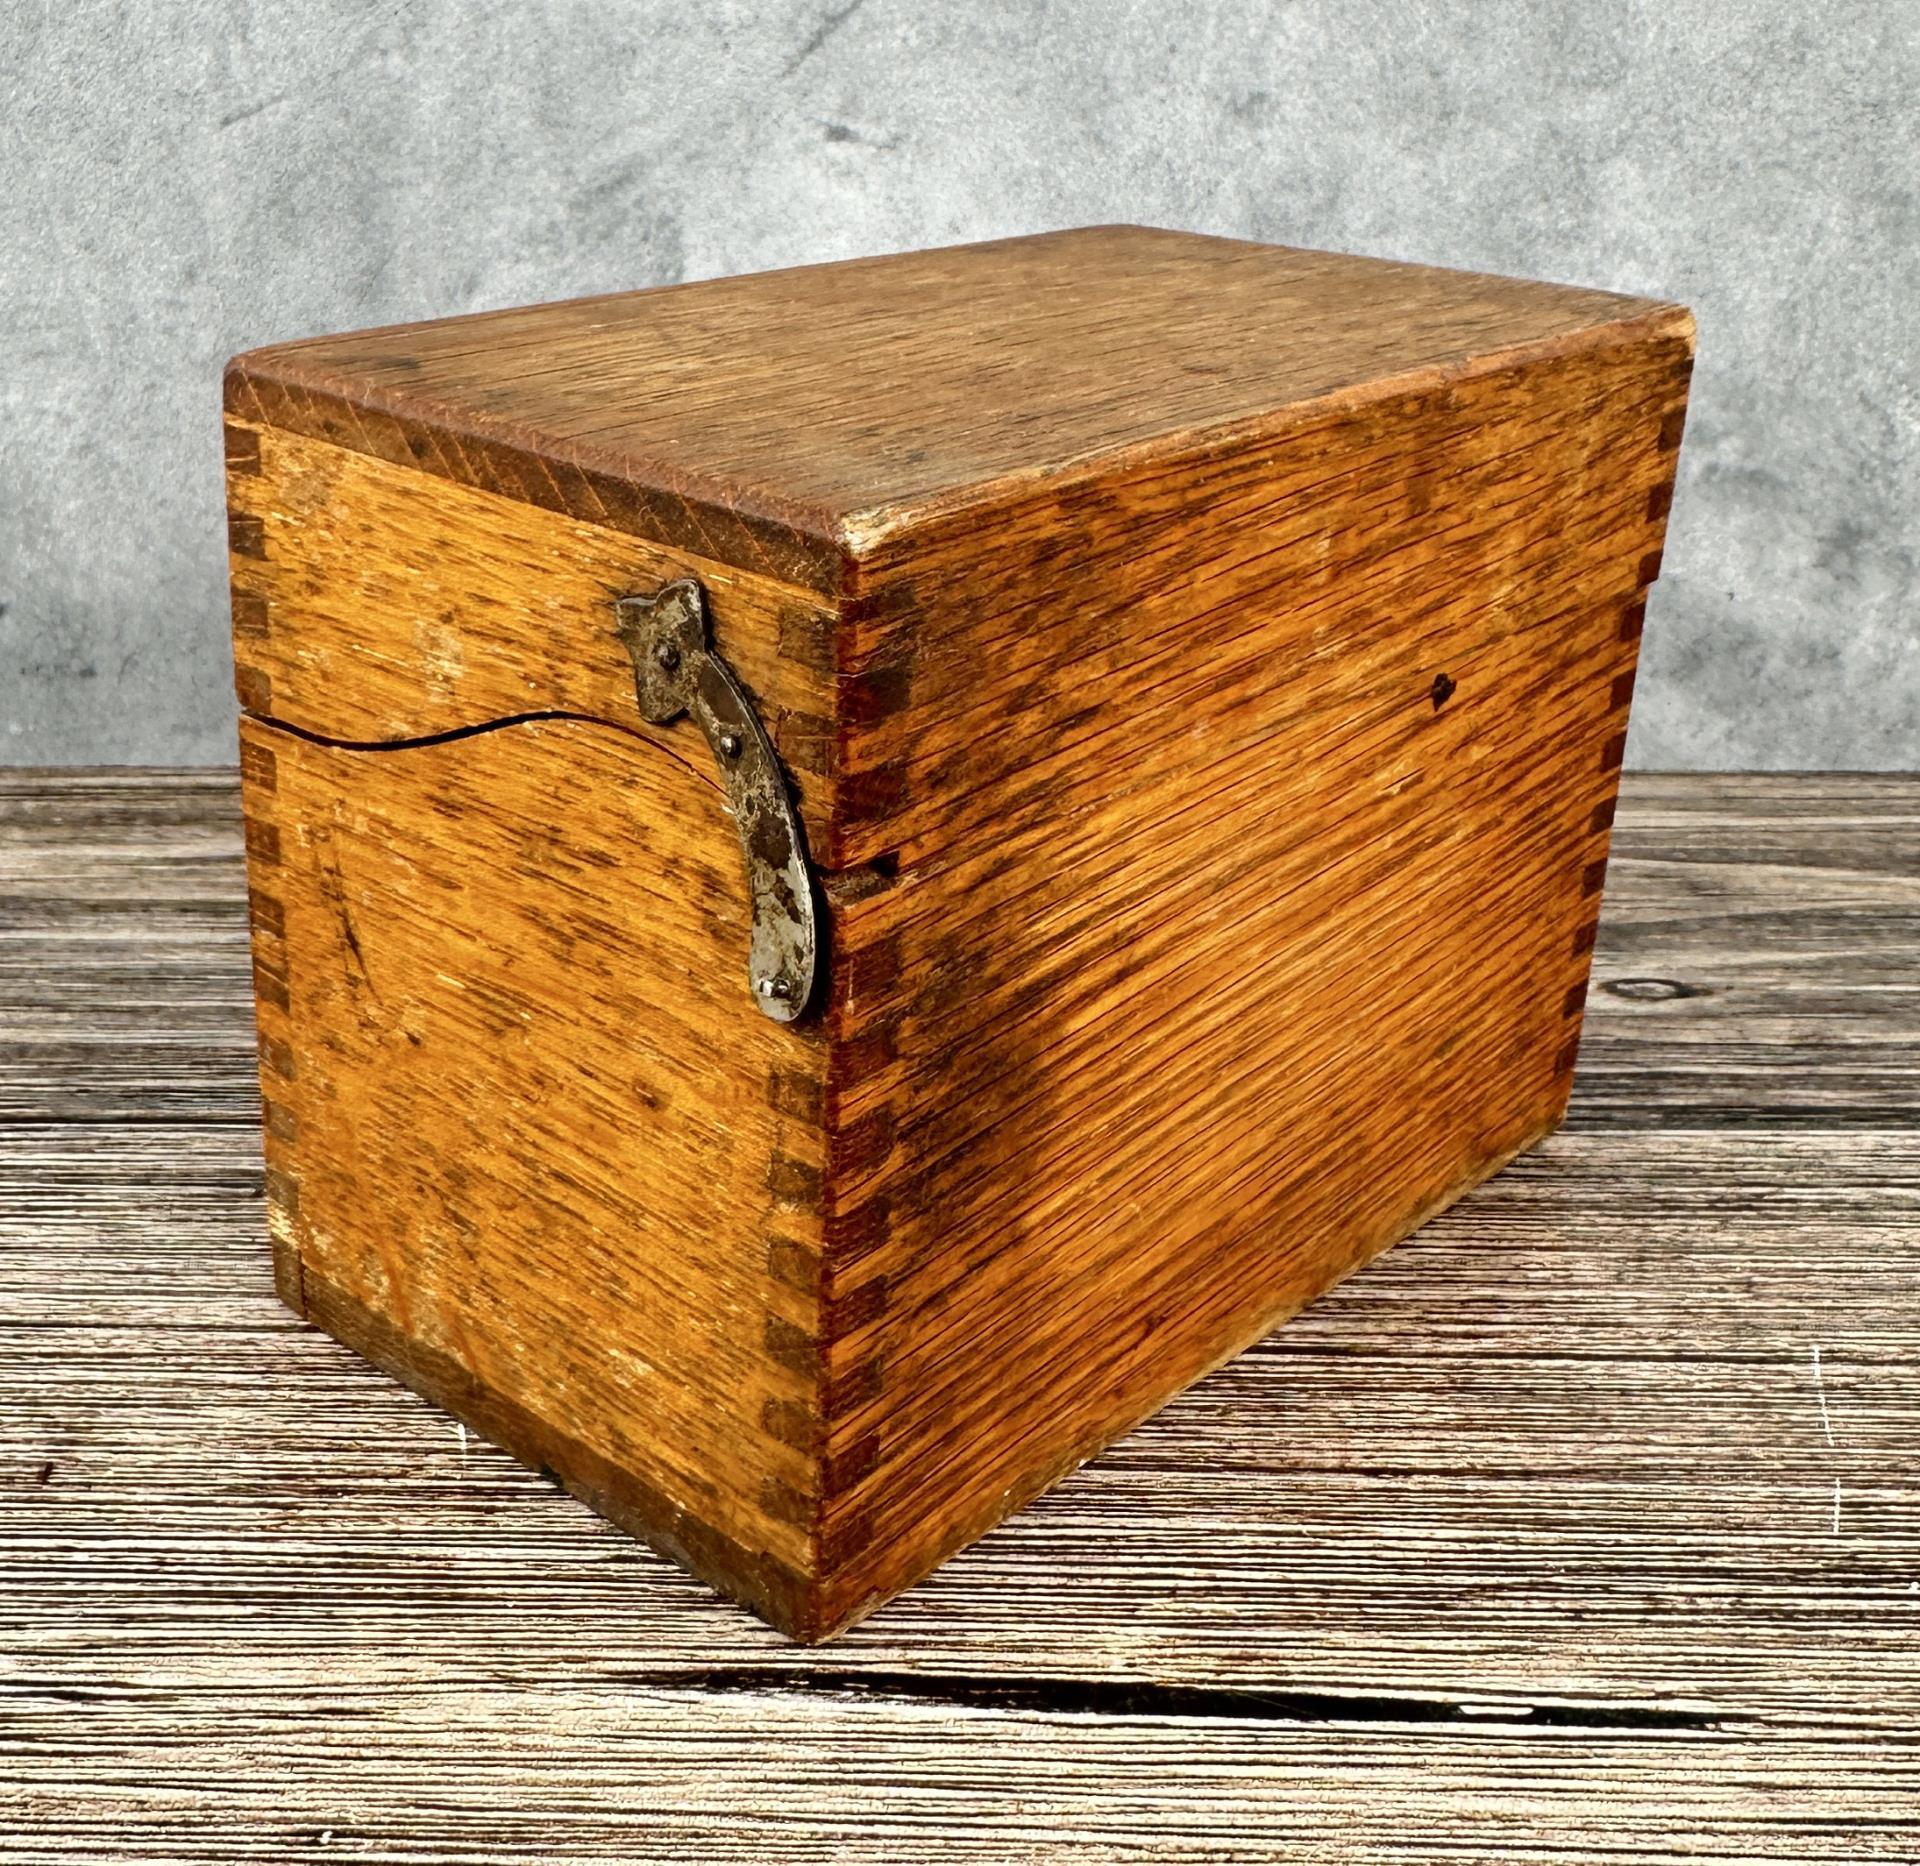 Antique Oak Recipe Box